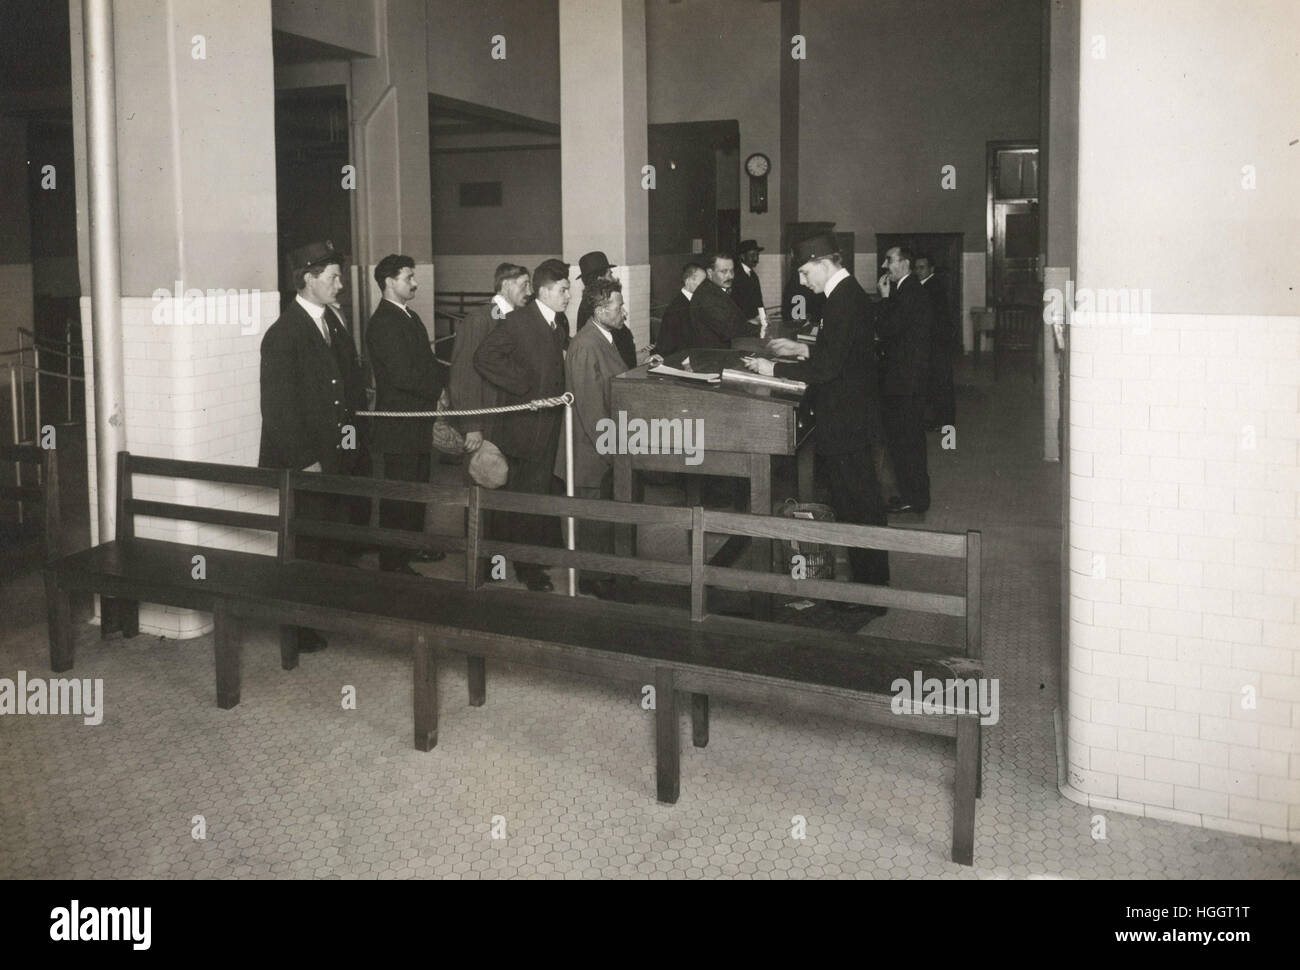 Los inmigrantes esperando en la línea para su procesamiento por parte de funcionarios de la oficina de inmigración. - Ellis Island Immigration Station 1902-1913 Foto de stock